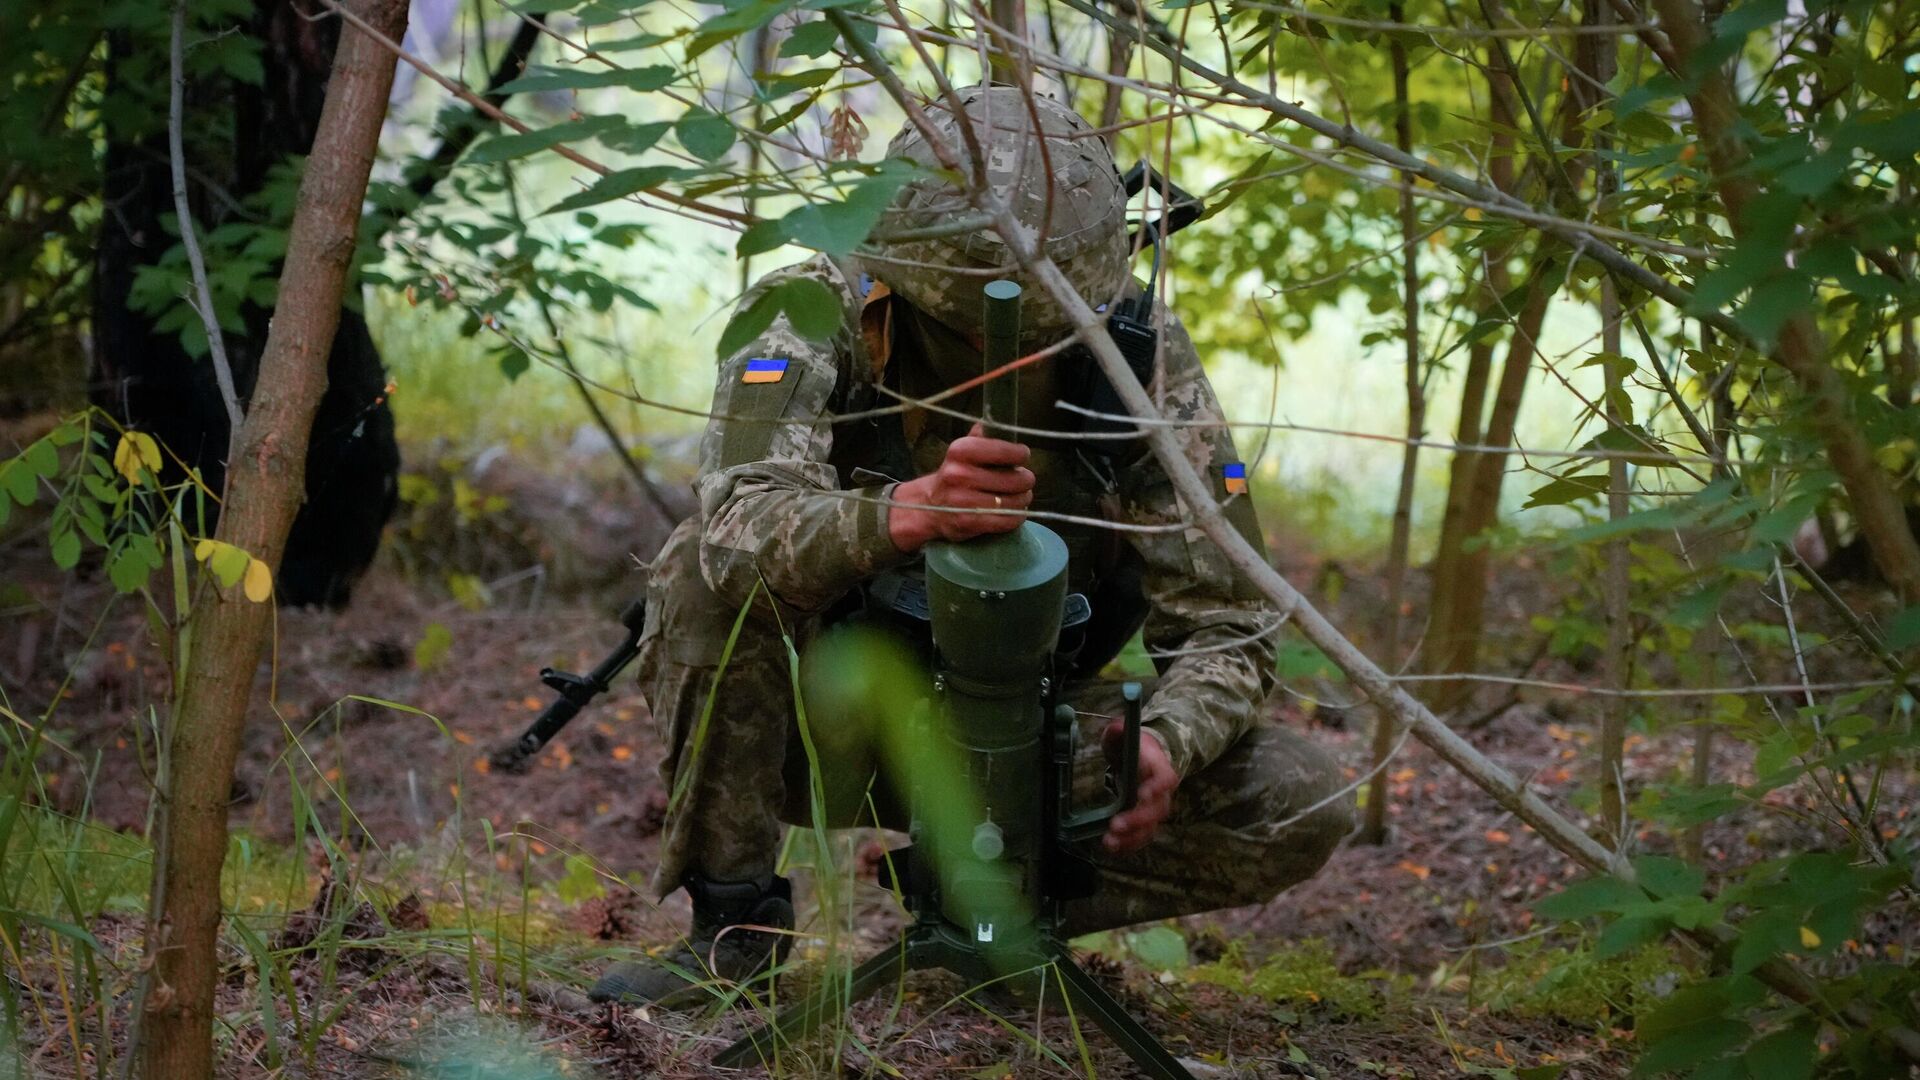 Солдат спецподразделения Украины устанавливает немецкую противотанковую мину направленного действия DM22 в Донецкой области - РИА Новости, 1920, 13.09.2022